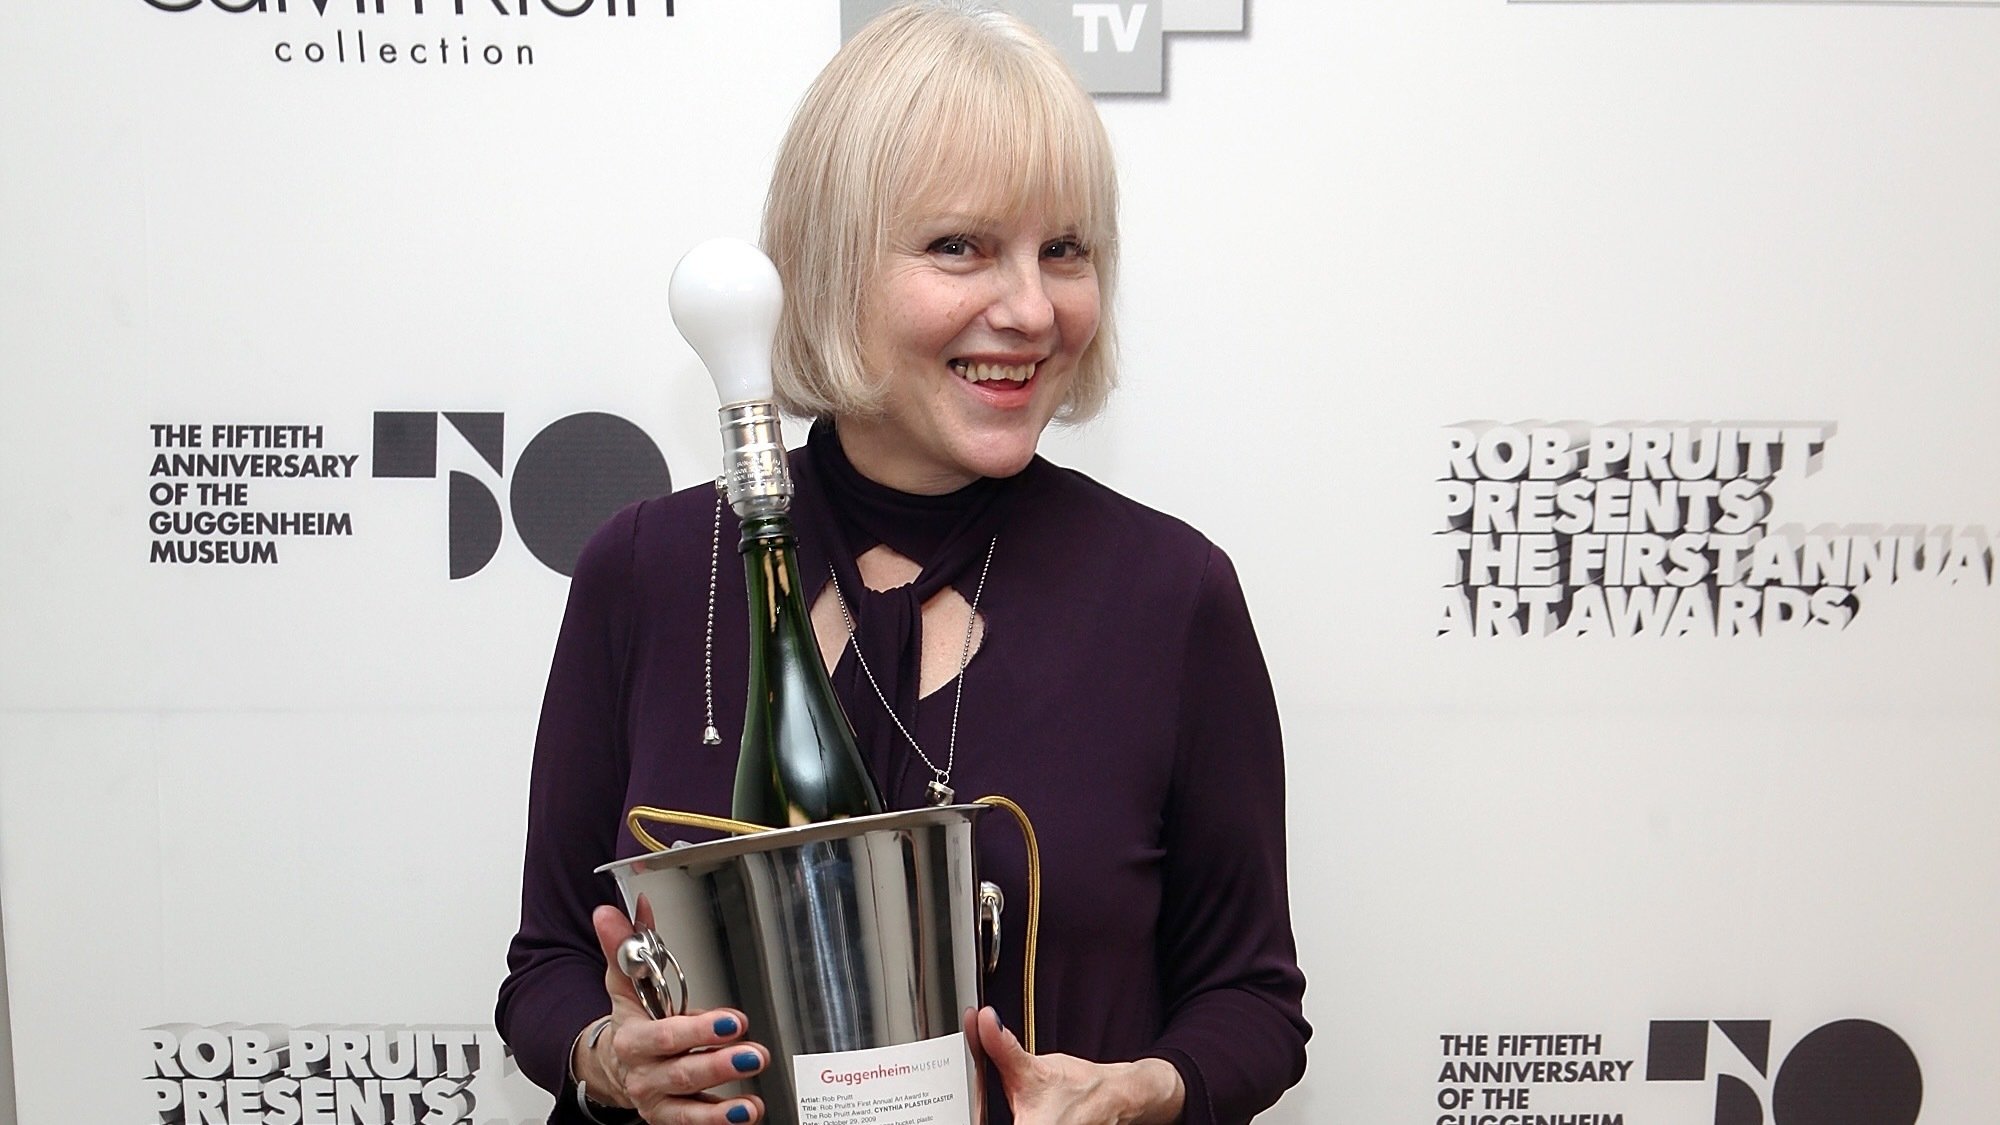 Cynthia Plaster Caster assiste à la première édition annuelle des Guggenheim Art Awards au musée Solomon R. Guggenheim le 29 octobre 2009 à New York.